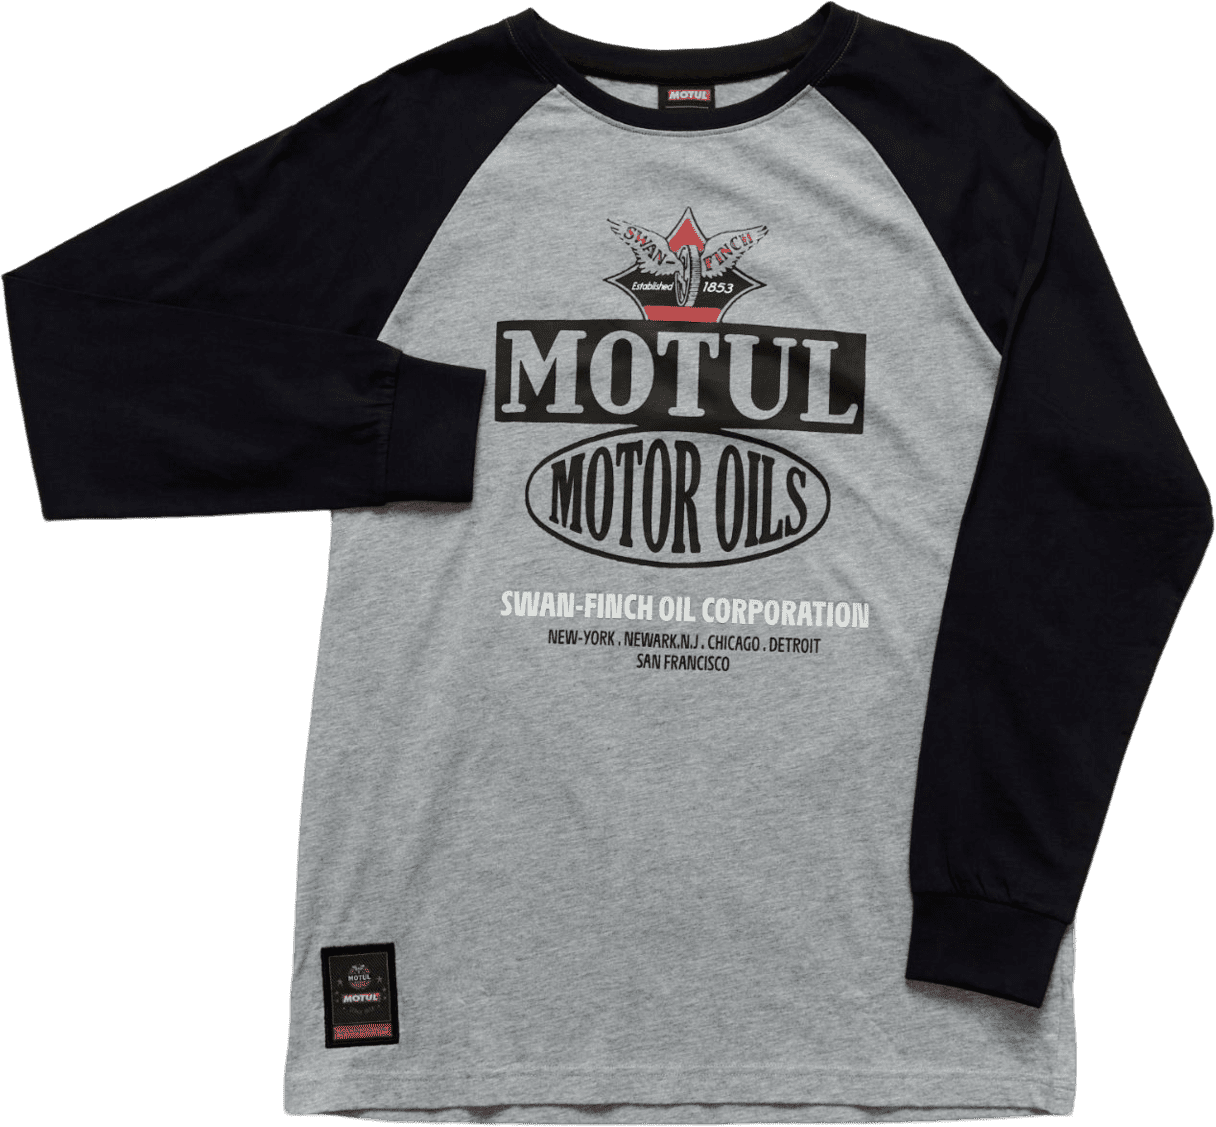 10040095001 Sinds de jaren '40 en '50 is Motul betrokken bij de motorsport om de technische superioriteit van zijn producten te demonstreren en enkele van de belangrijkste innovaties te ontwikkelen die de industrie op zijn kop hebben gezet.